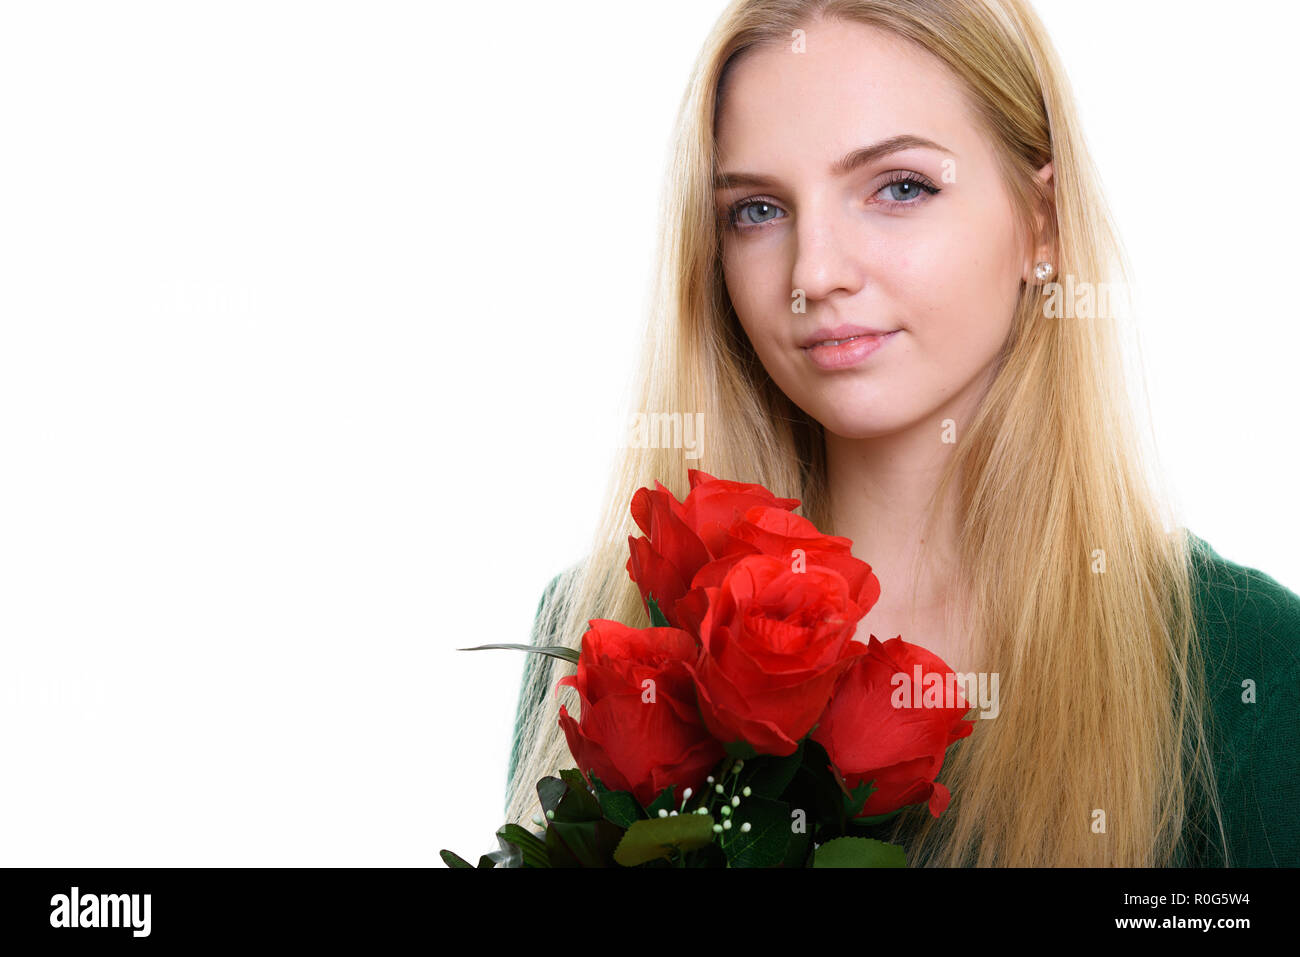 Chiusura del giovane bella ragazza adolescente holding rose rosse pronto Foto Stock